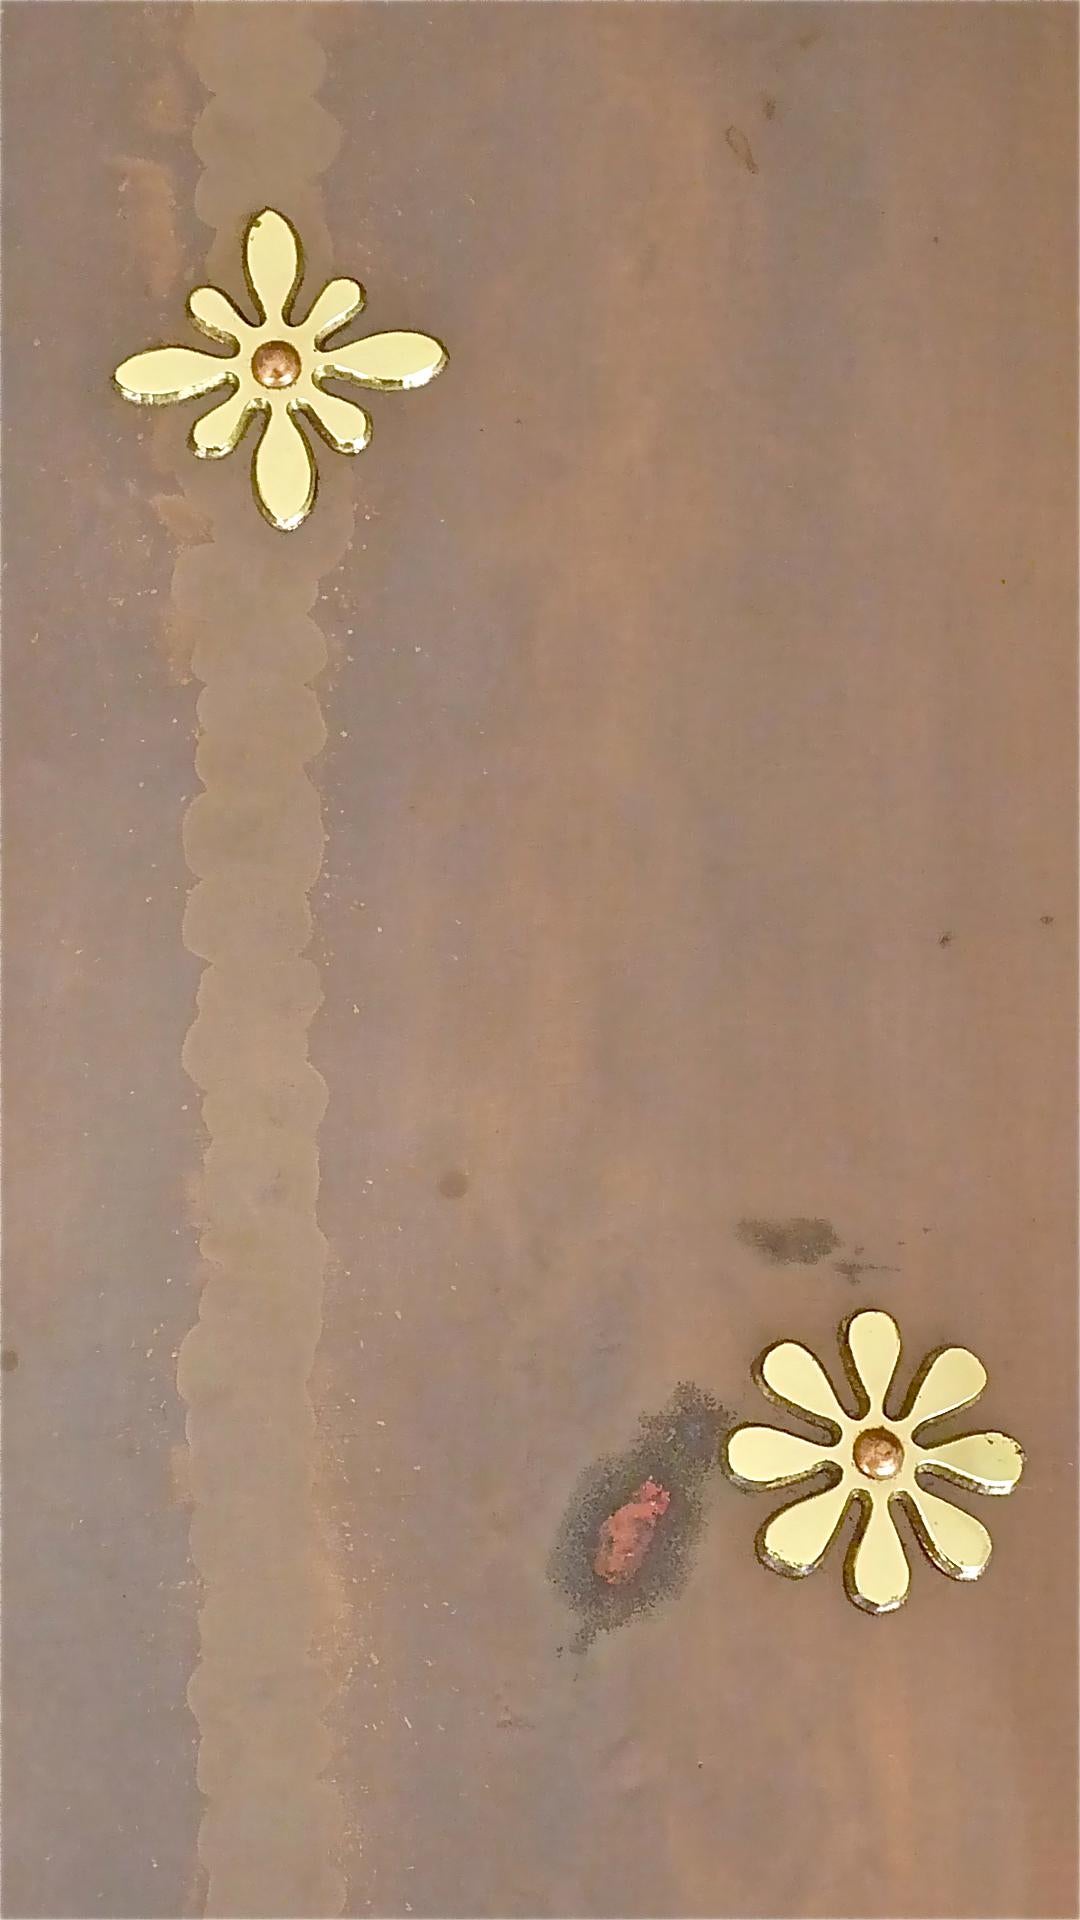 Mid-20th Century No. 1 Umbrella Stand Copper Brass Flowers by Vereinigte Werkstätten München 1955